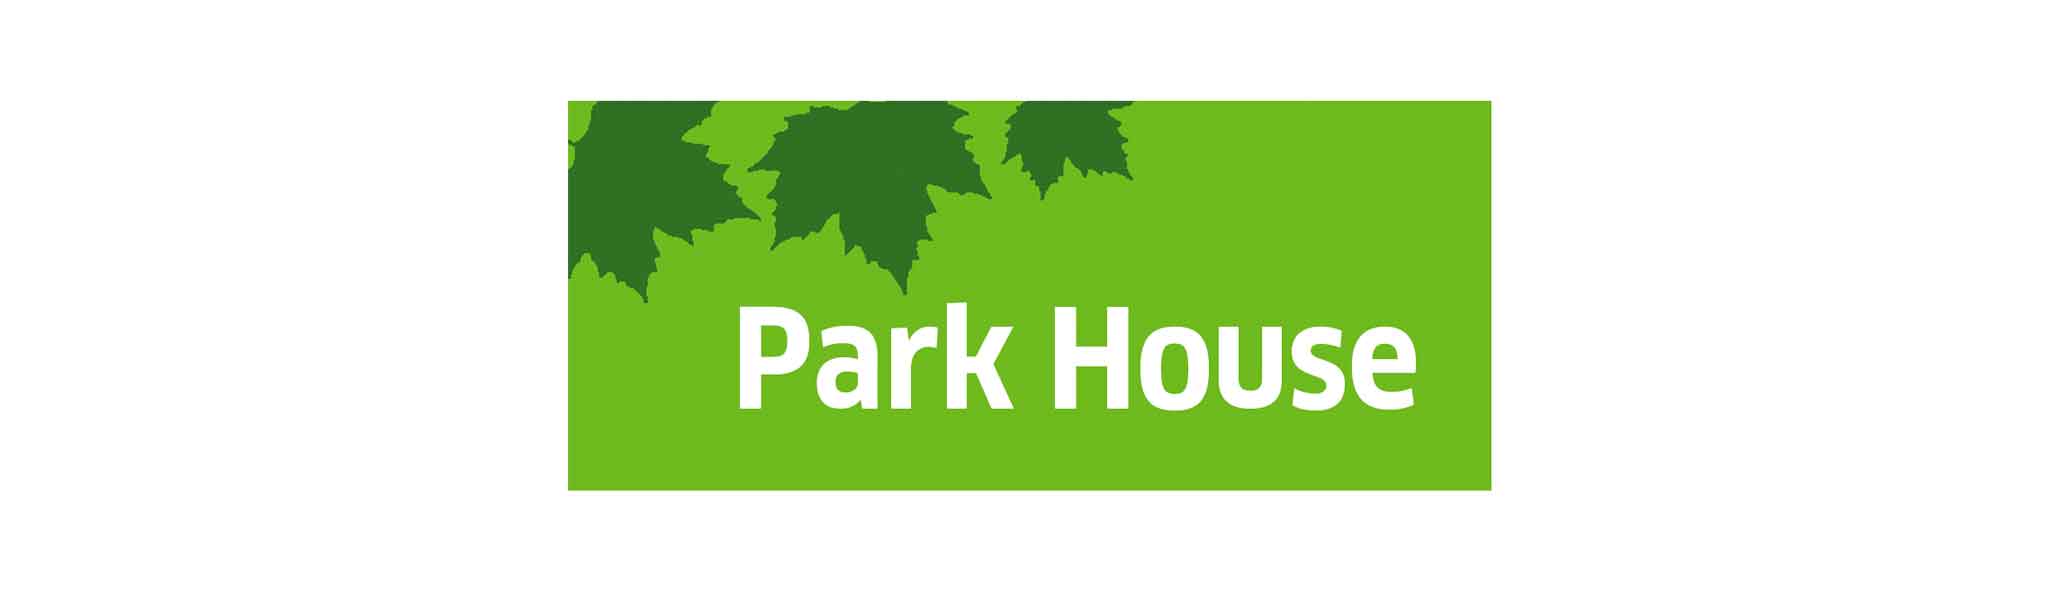 park house logo design